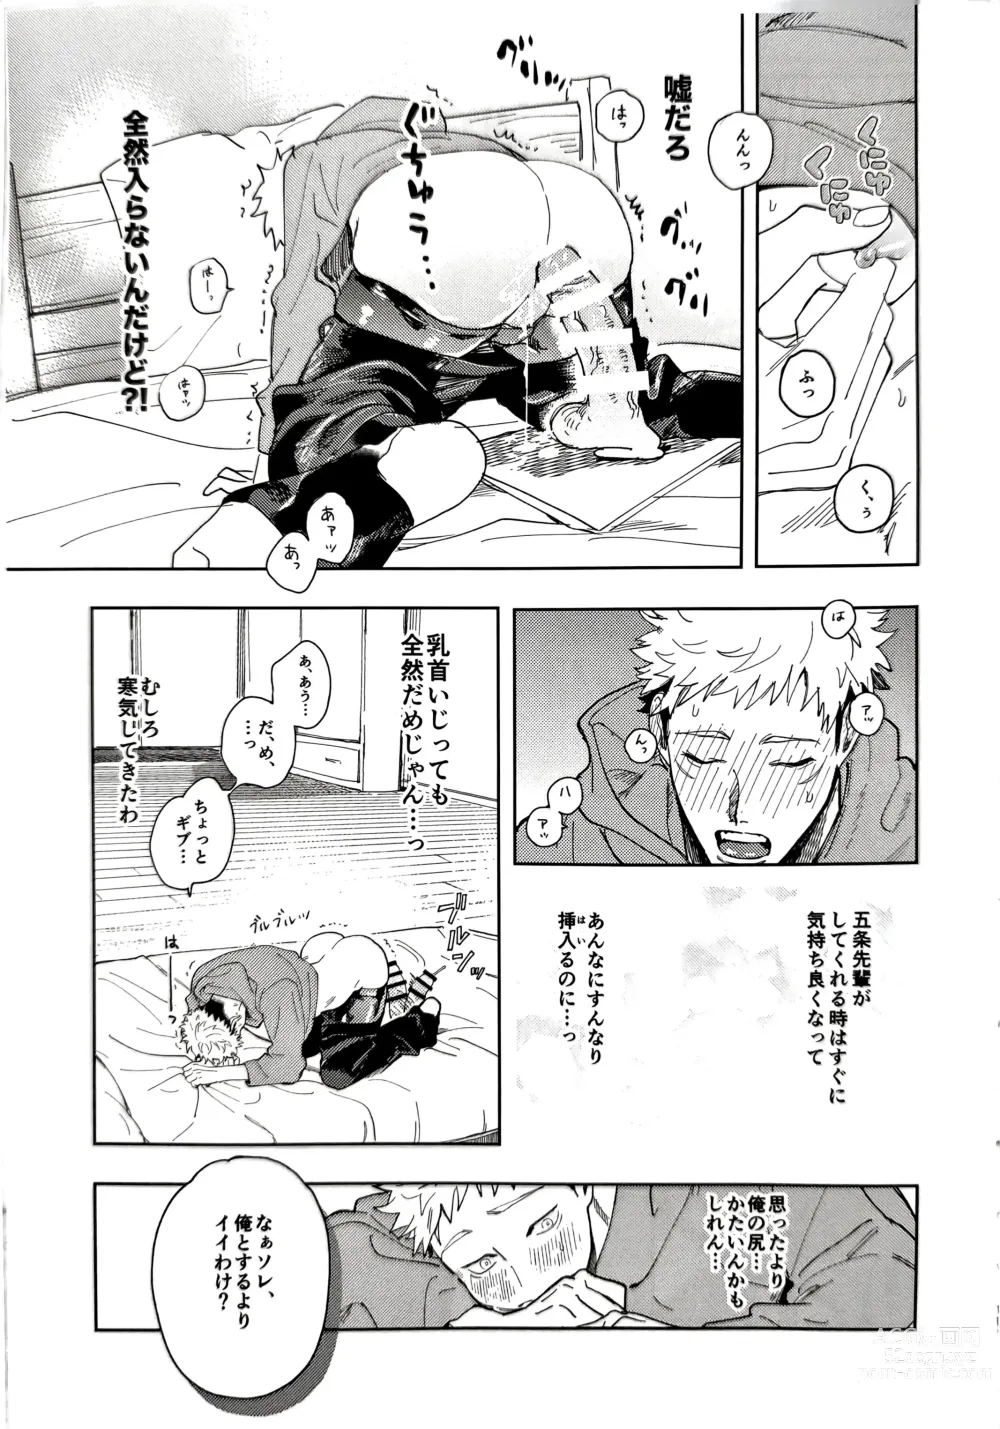 Page 10 of doujinshi Sore ga Aitte Yatsu desho - the prostate orgasm